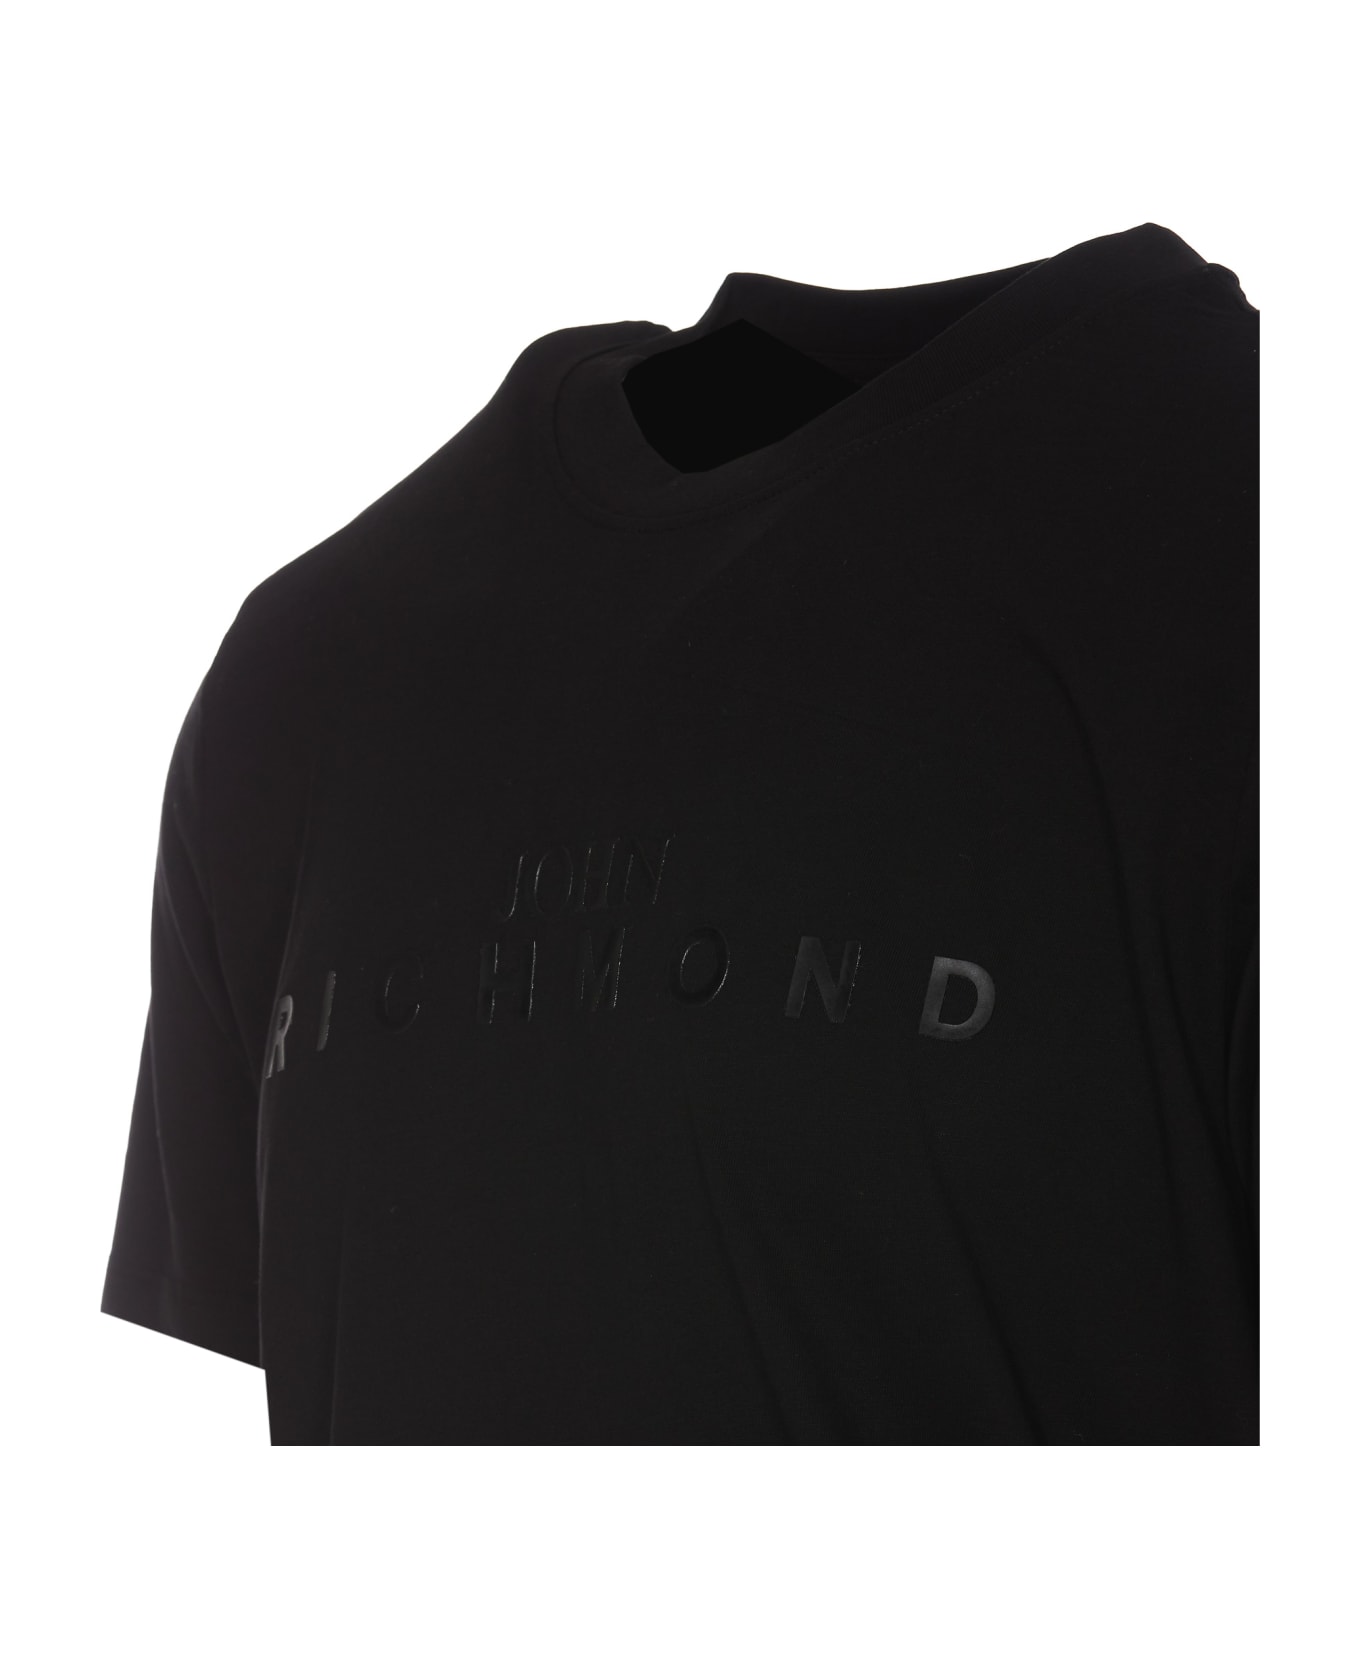 Richmond Maicon T-shirt